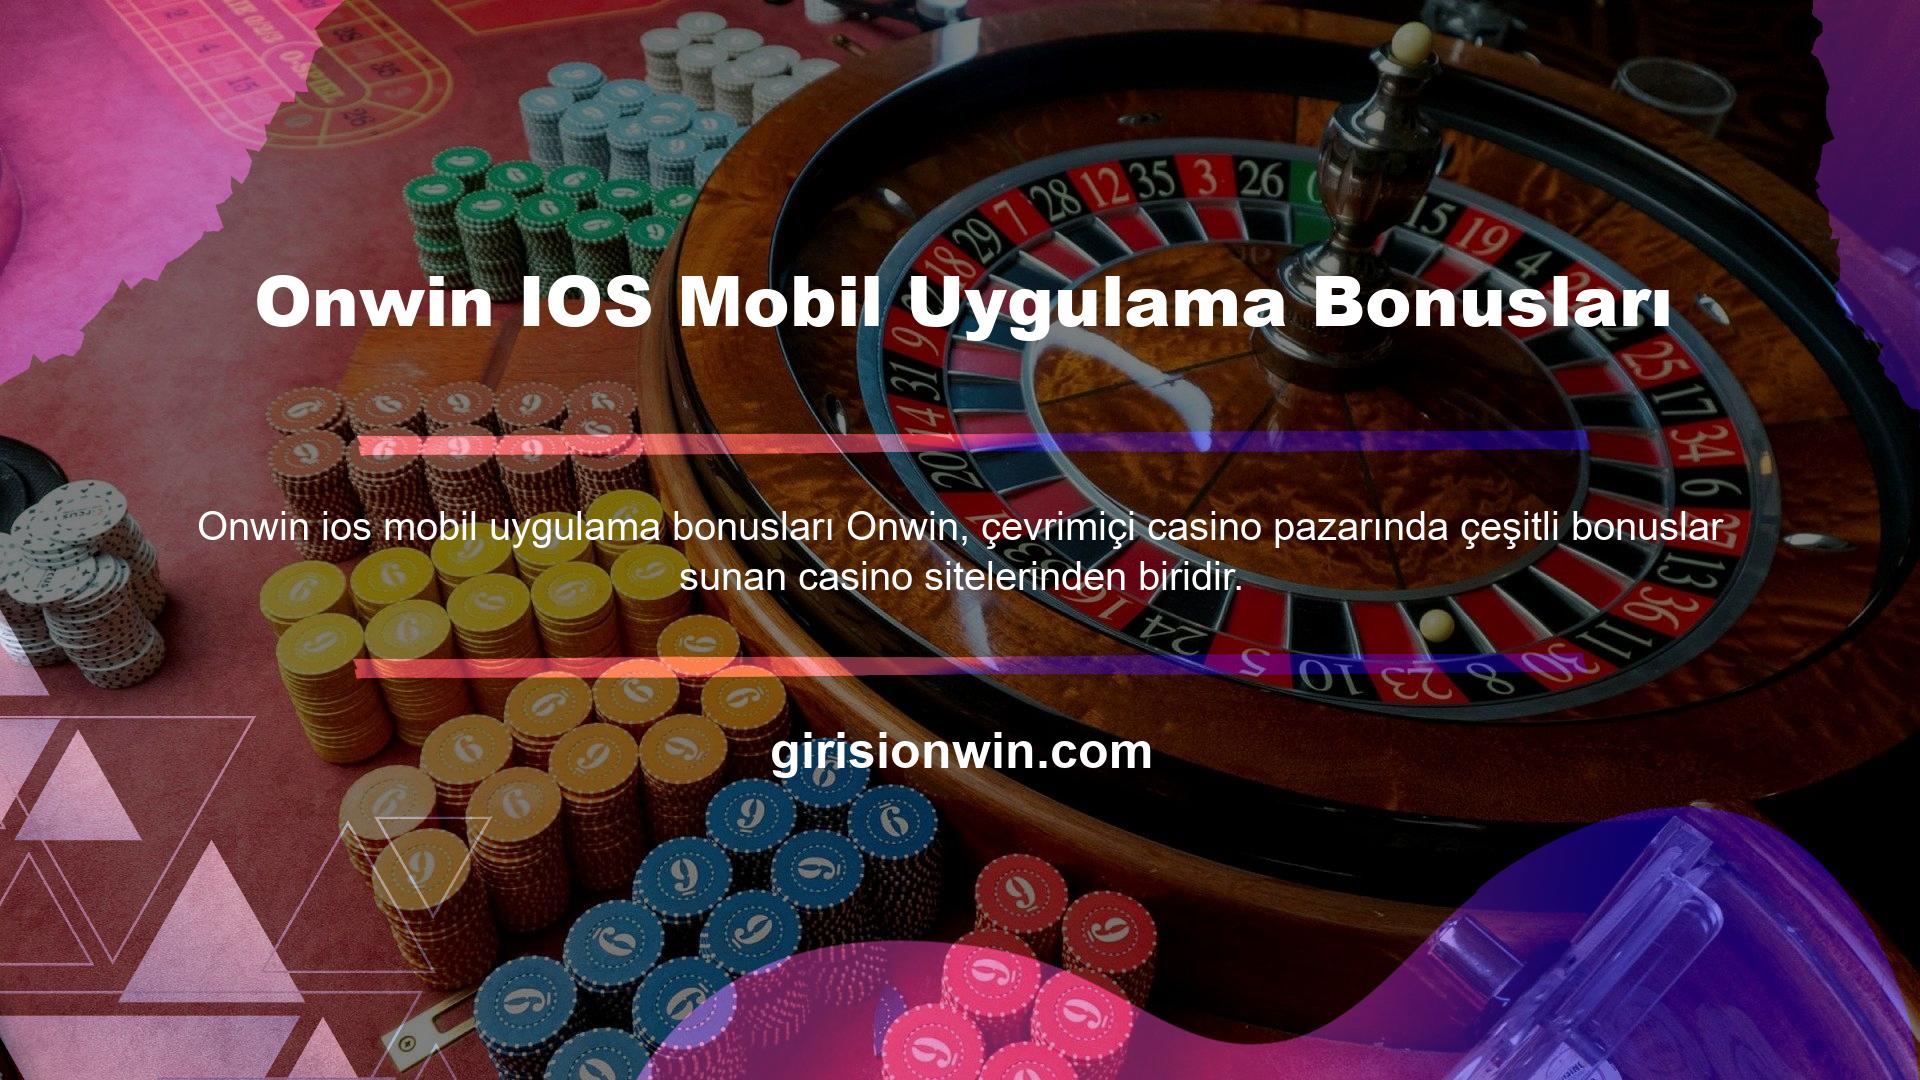 Onwin IOS Mobil Uygulama Bonusları